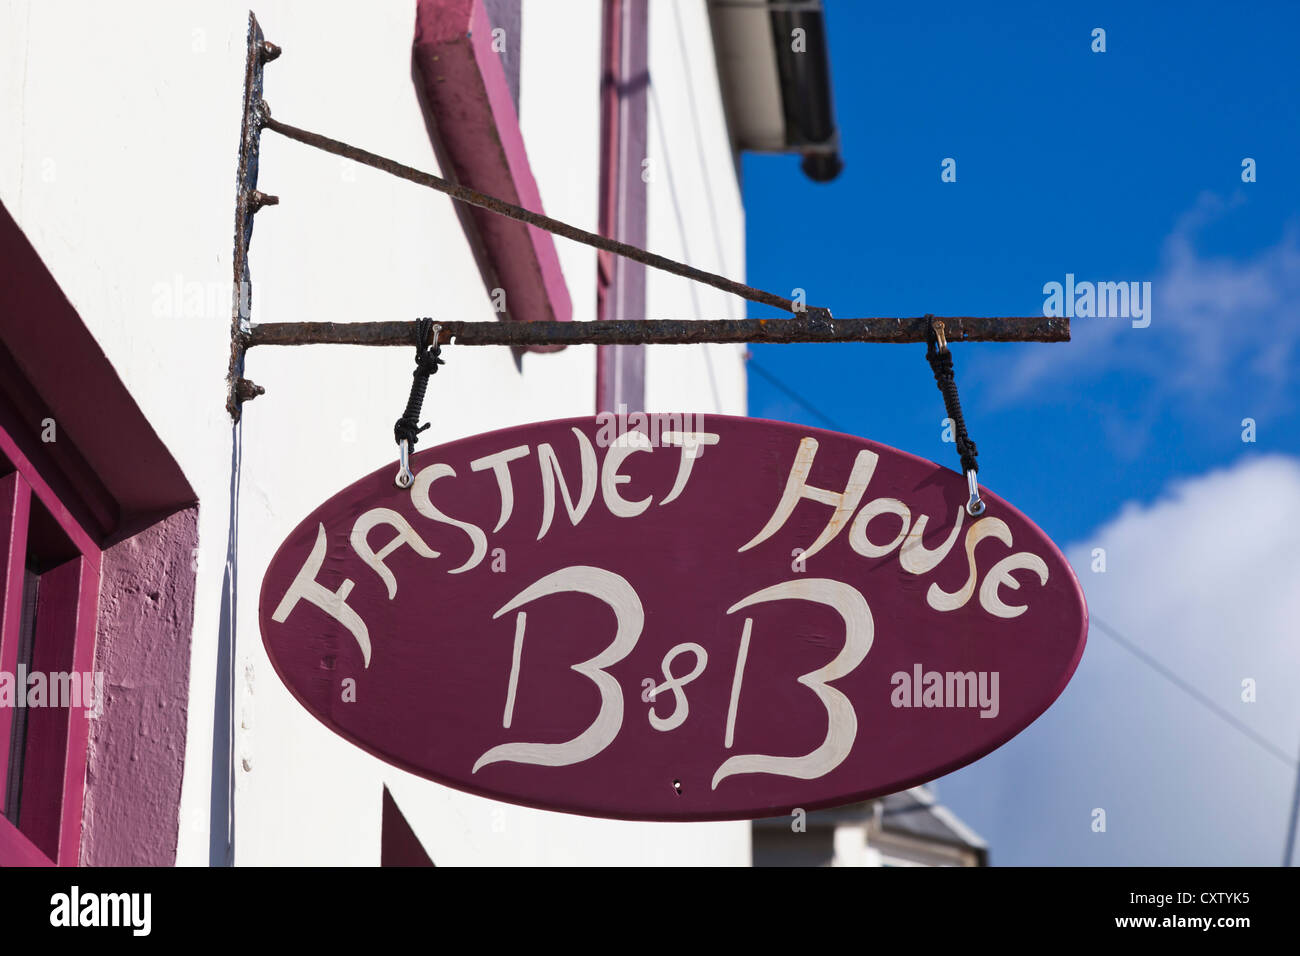 Baltimore, West Cork, Irland. Melden Sie sich für Fastnet B & B. Bed &amp; Breakfast. Typische irische Zeichen. Stockfoto